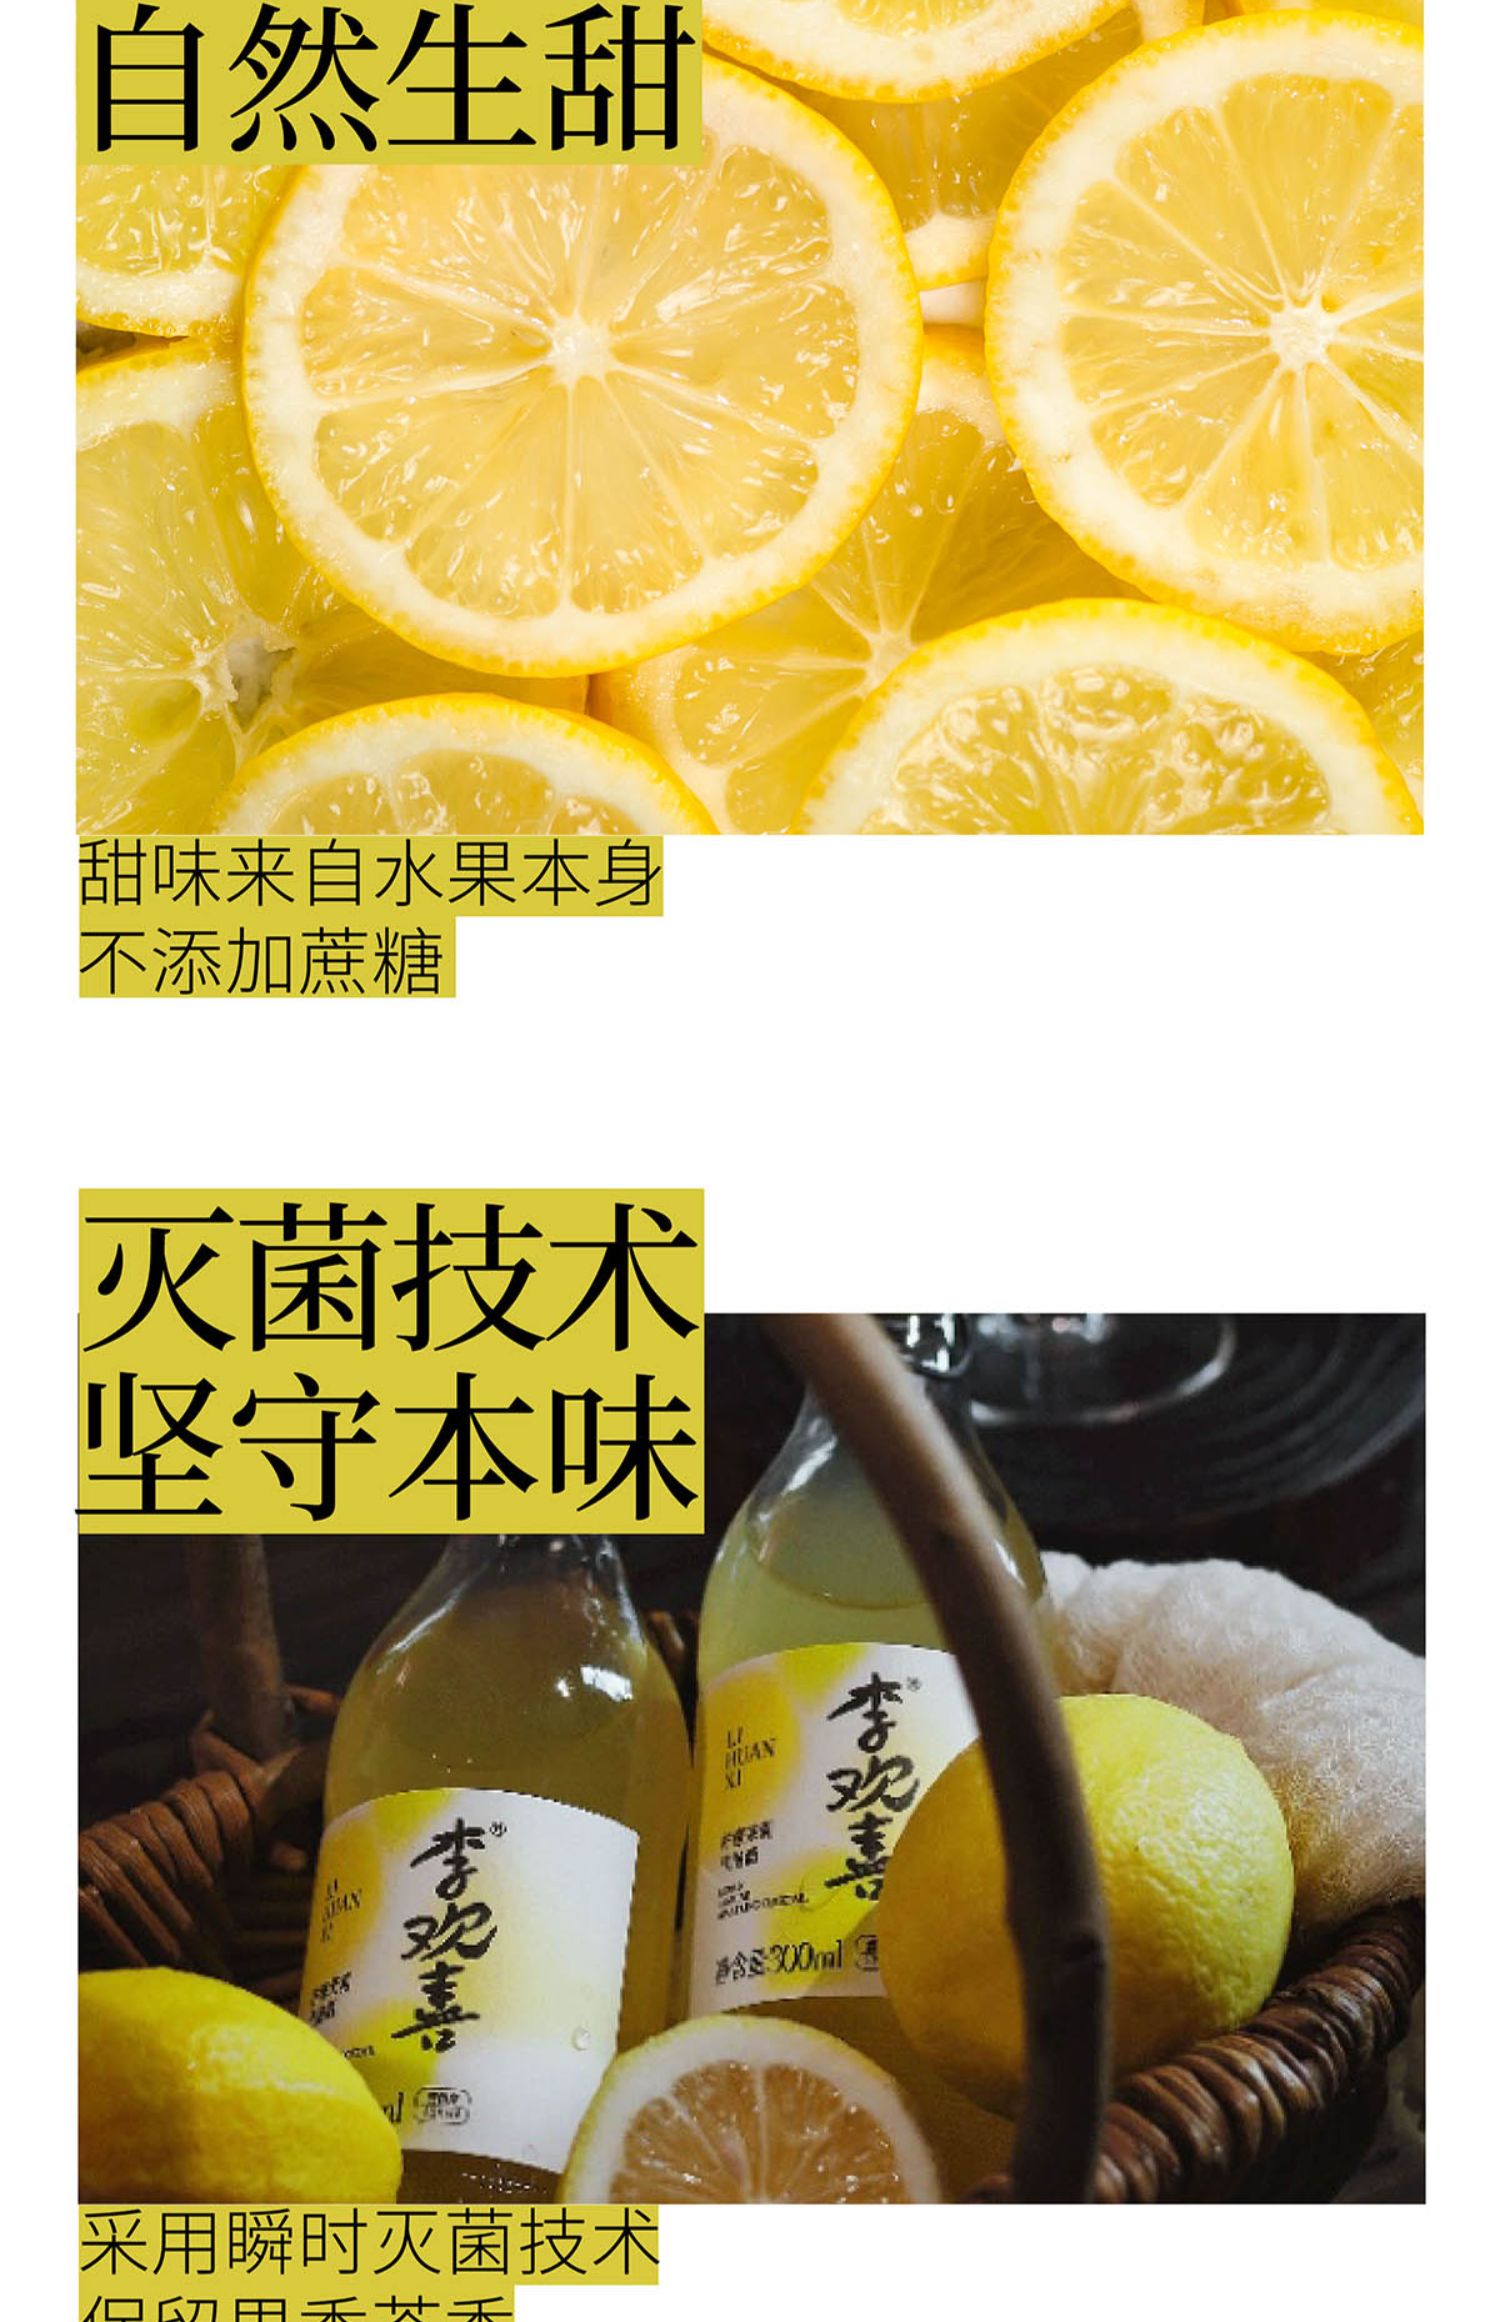 【两瓶】李欢喜柠檬茉莉气泡酒